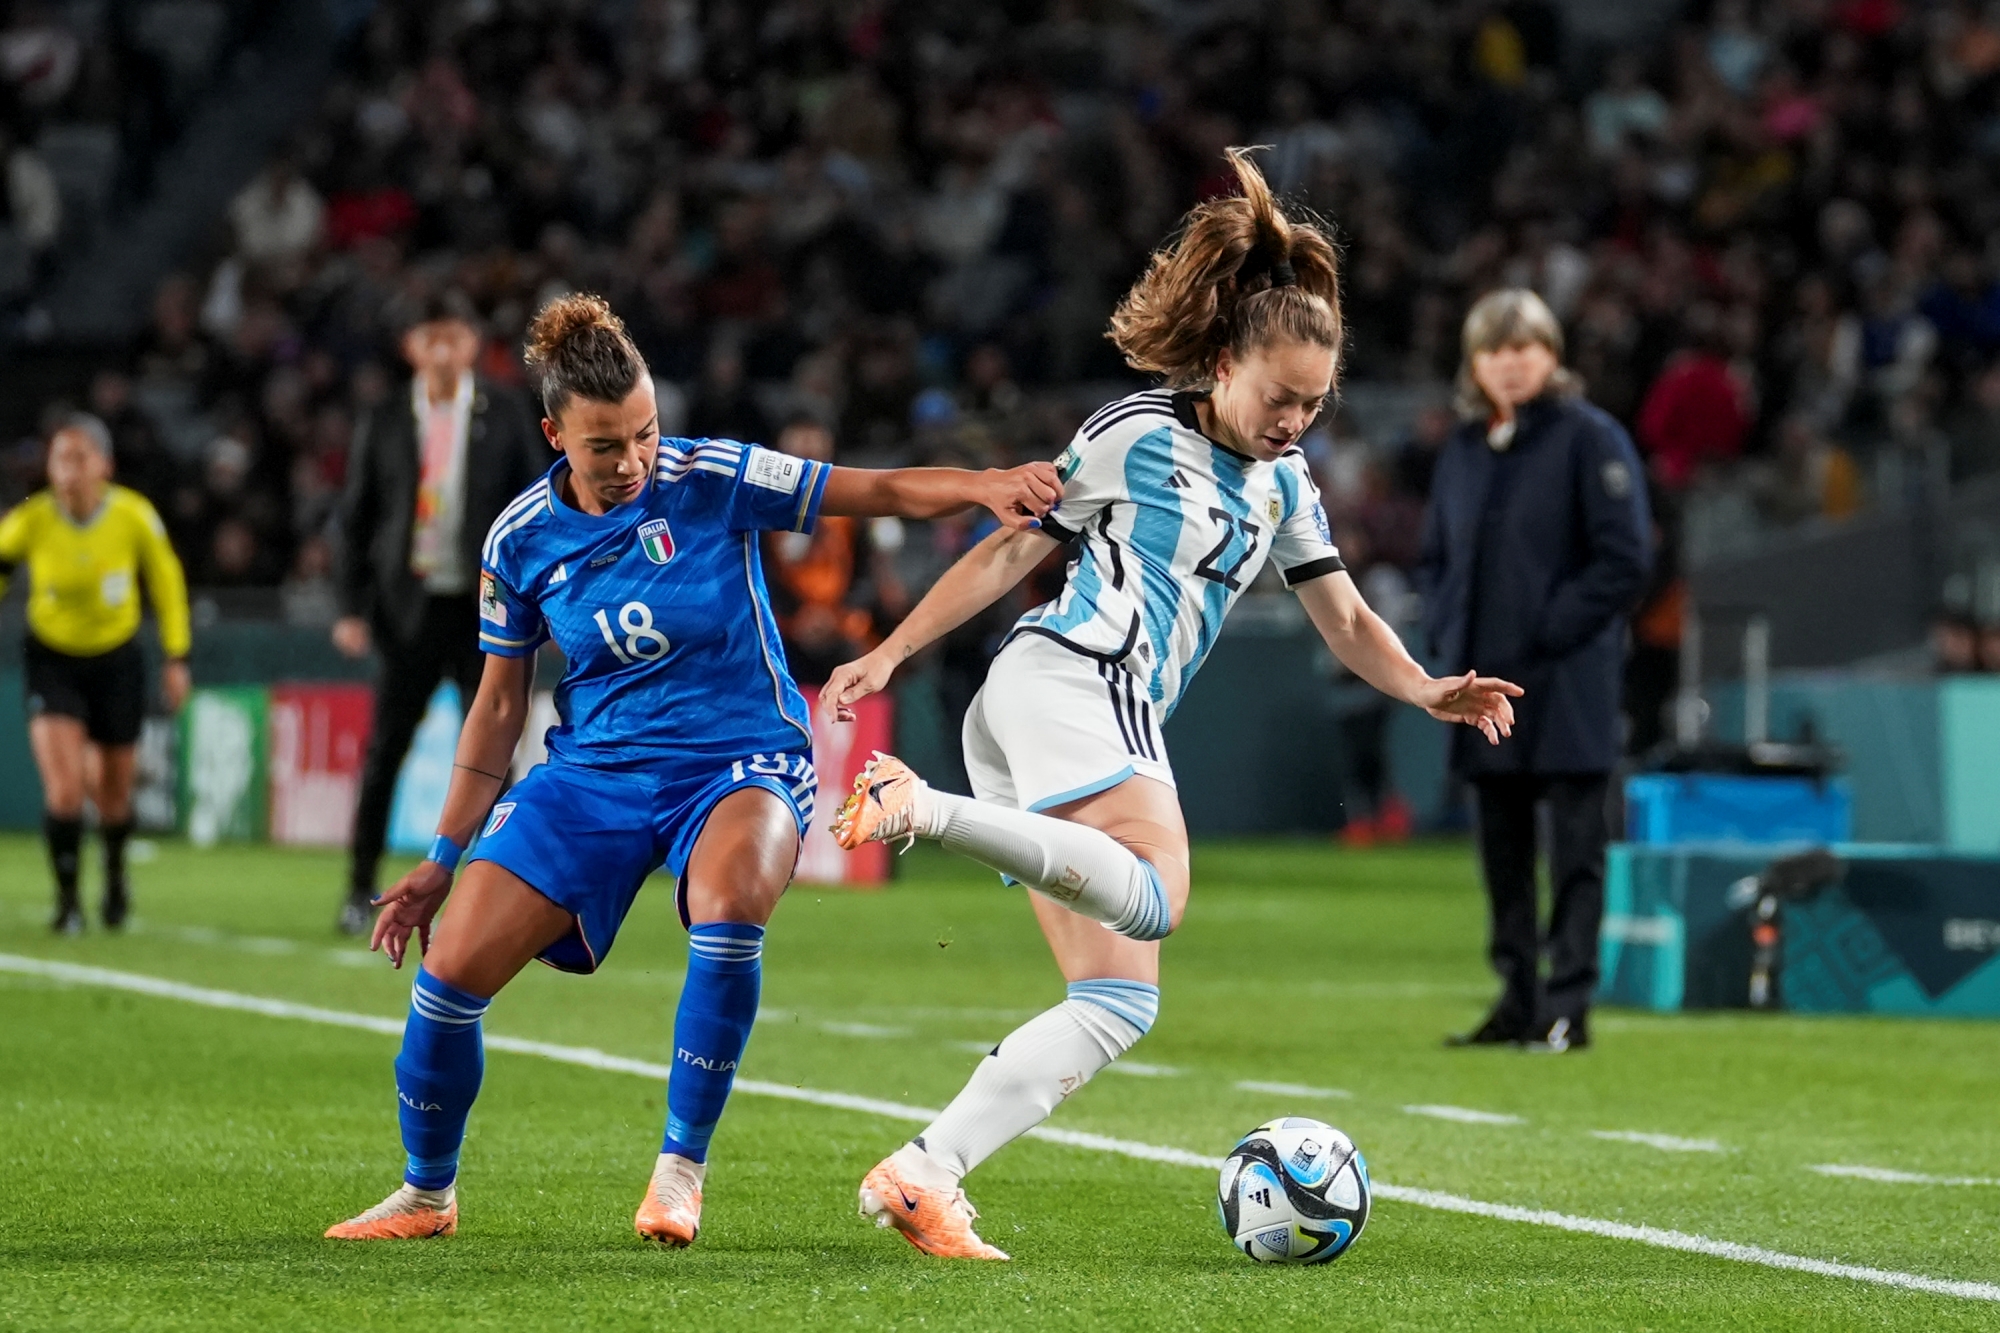 seleccion-argentina-futbol-femenino-mundial-julieta-ferrario